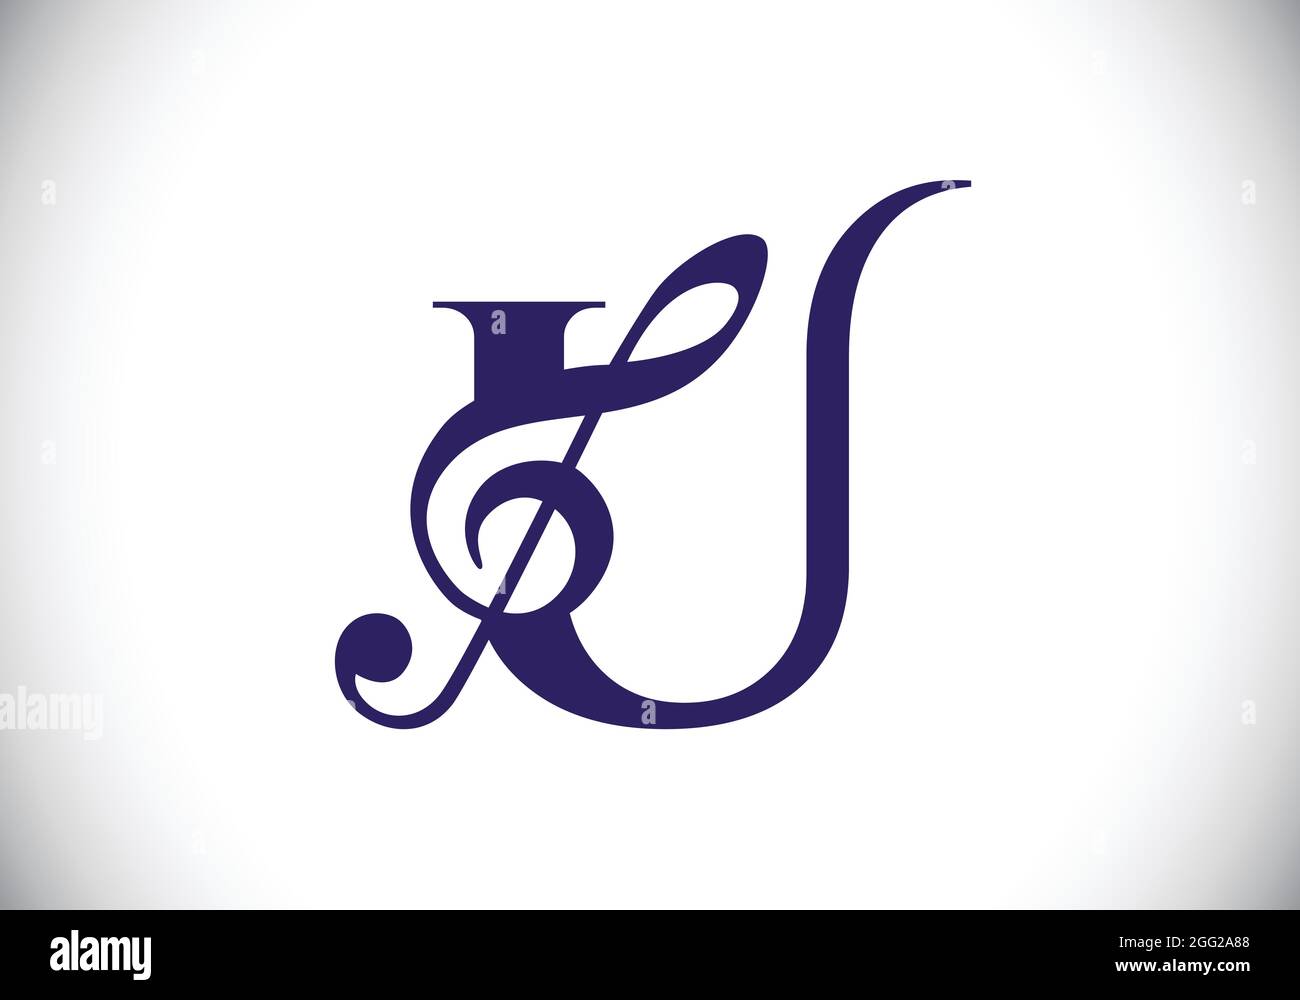 Anfängliches U-Monogramm-Alphabet mit einer musikalischen Note. Symphonie- oder Melodiezeichen. Symbol für Musikzeichen. Schrift-Emblem. Moderne Vektor-Logo-Design-Vorlage. Stock Vektor